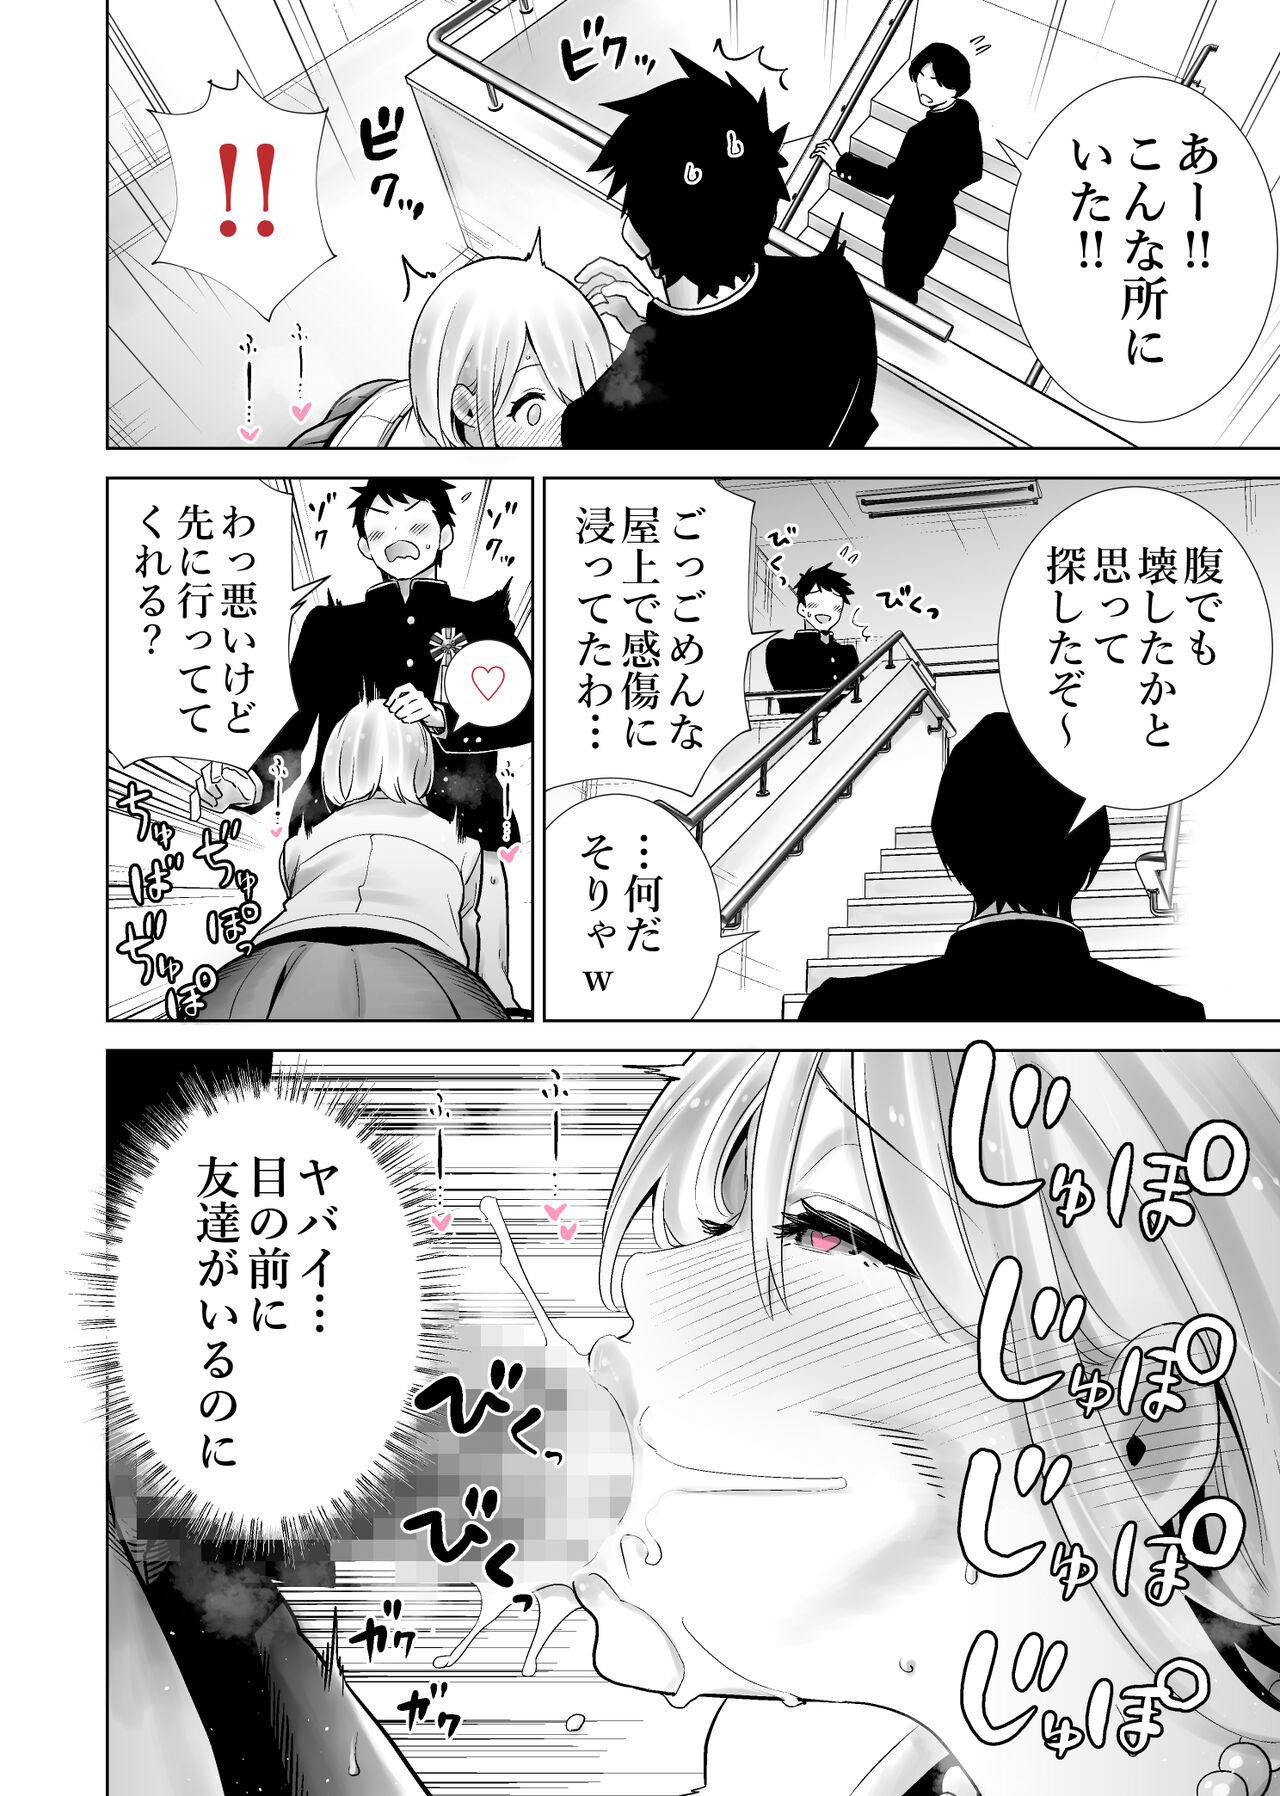 Piss Tomodachi no Mama ga Boku no Dekachin de Ikimakutta Sotsugyoushiki - Original Stepfather - Page 6